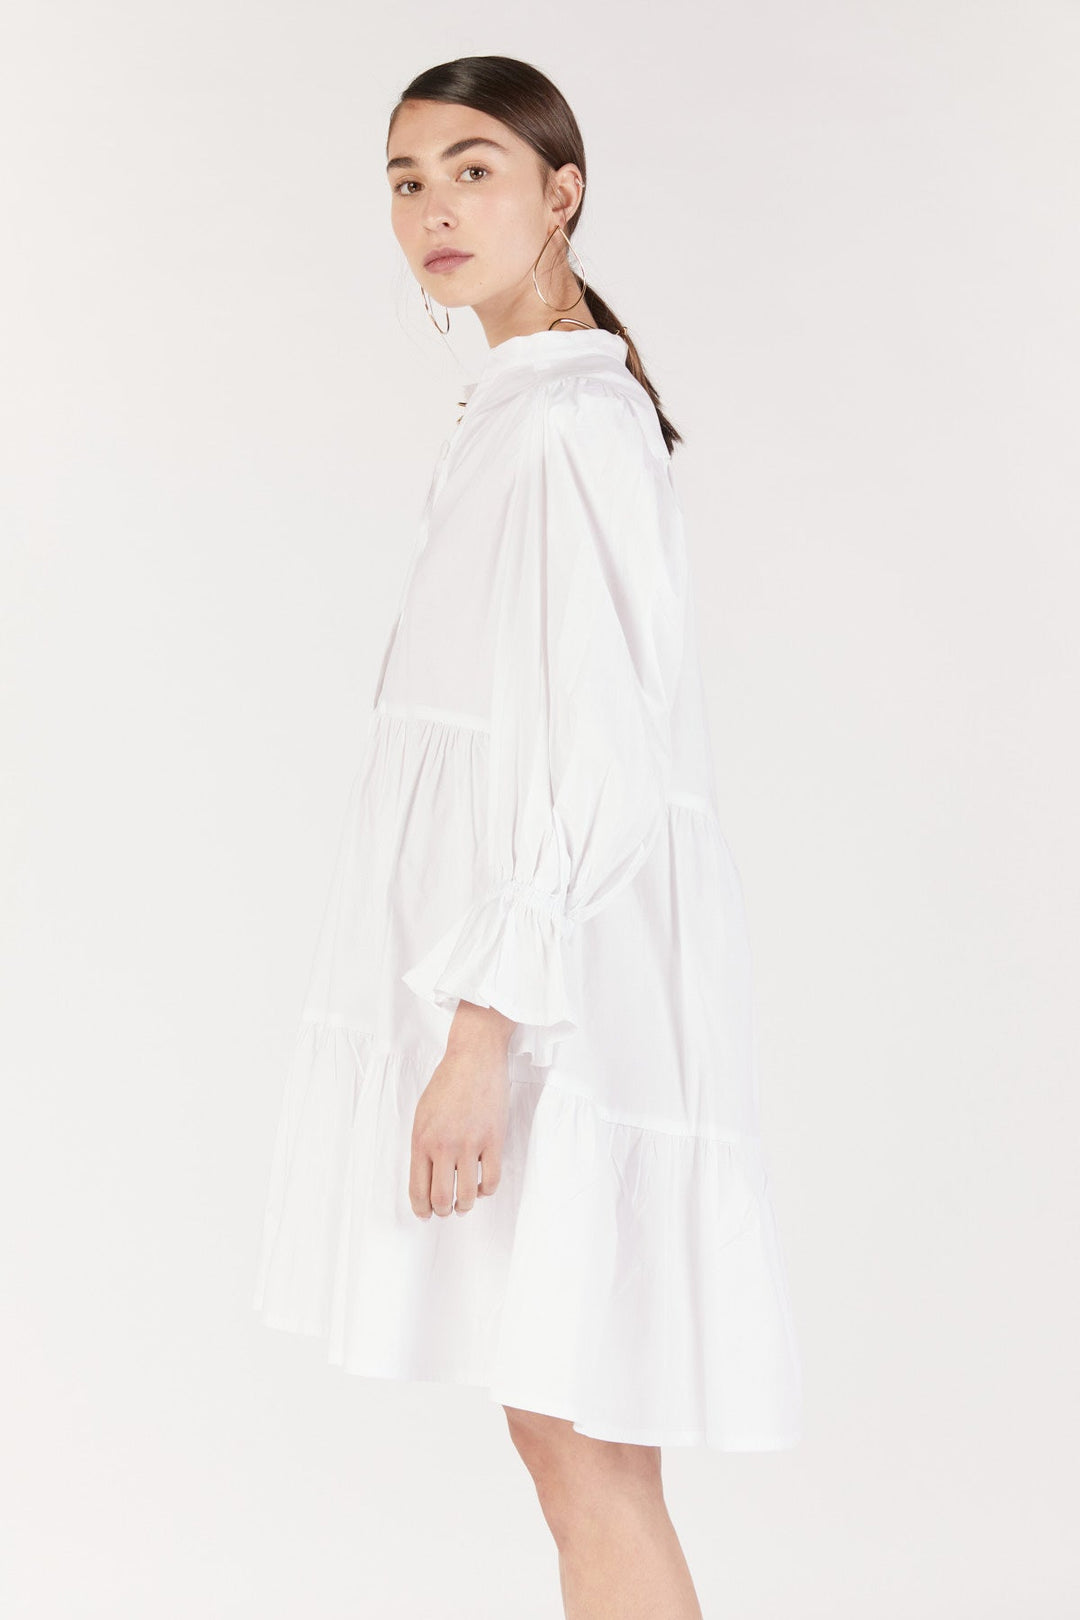 שמלת מיני ליפרי בצבע לבן - Dana Sidi